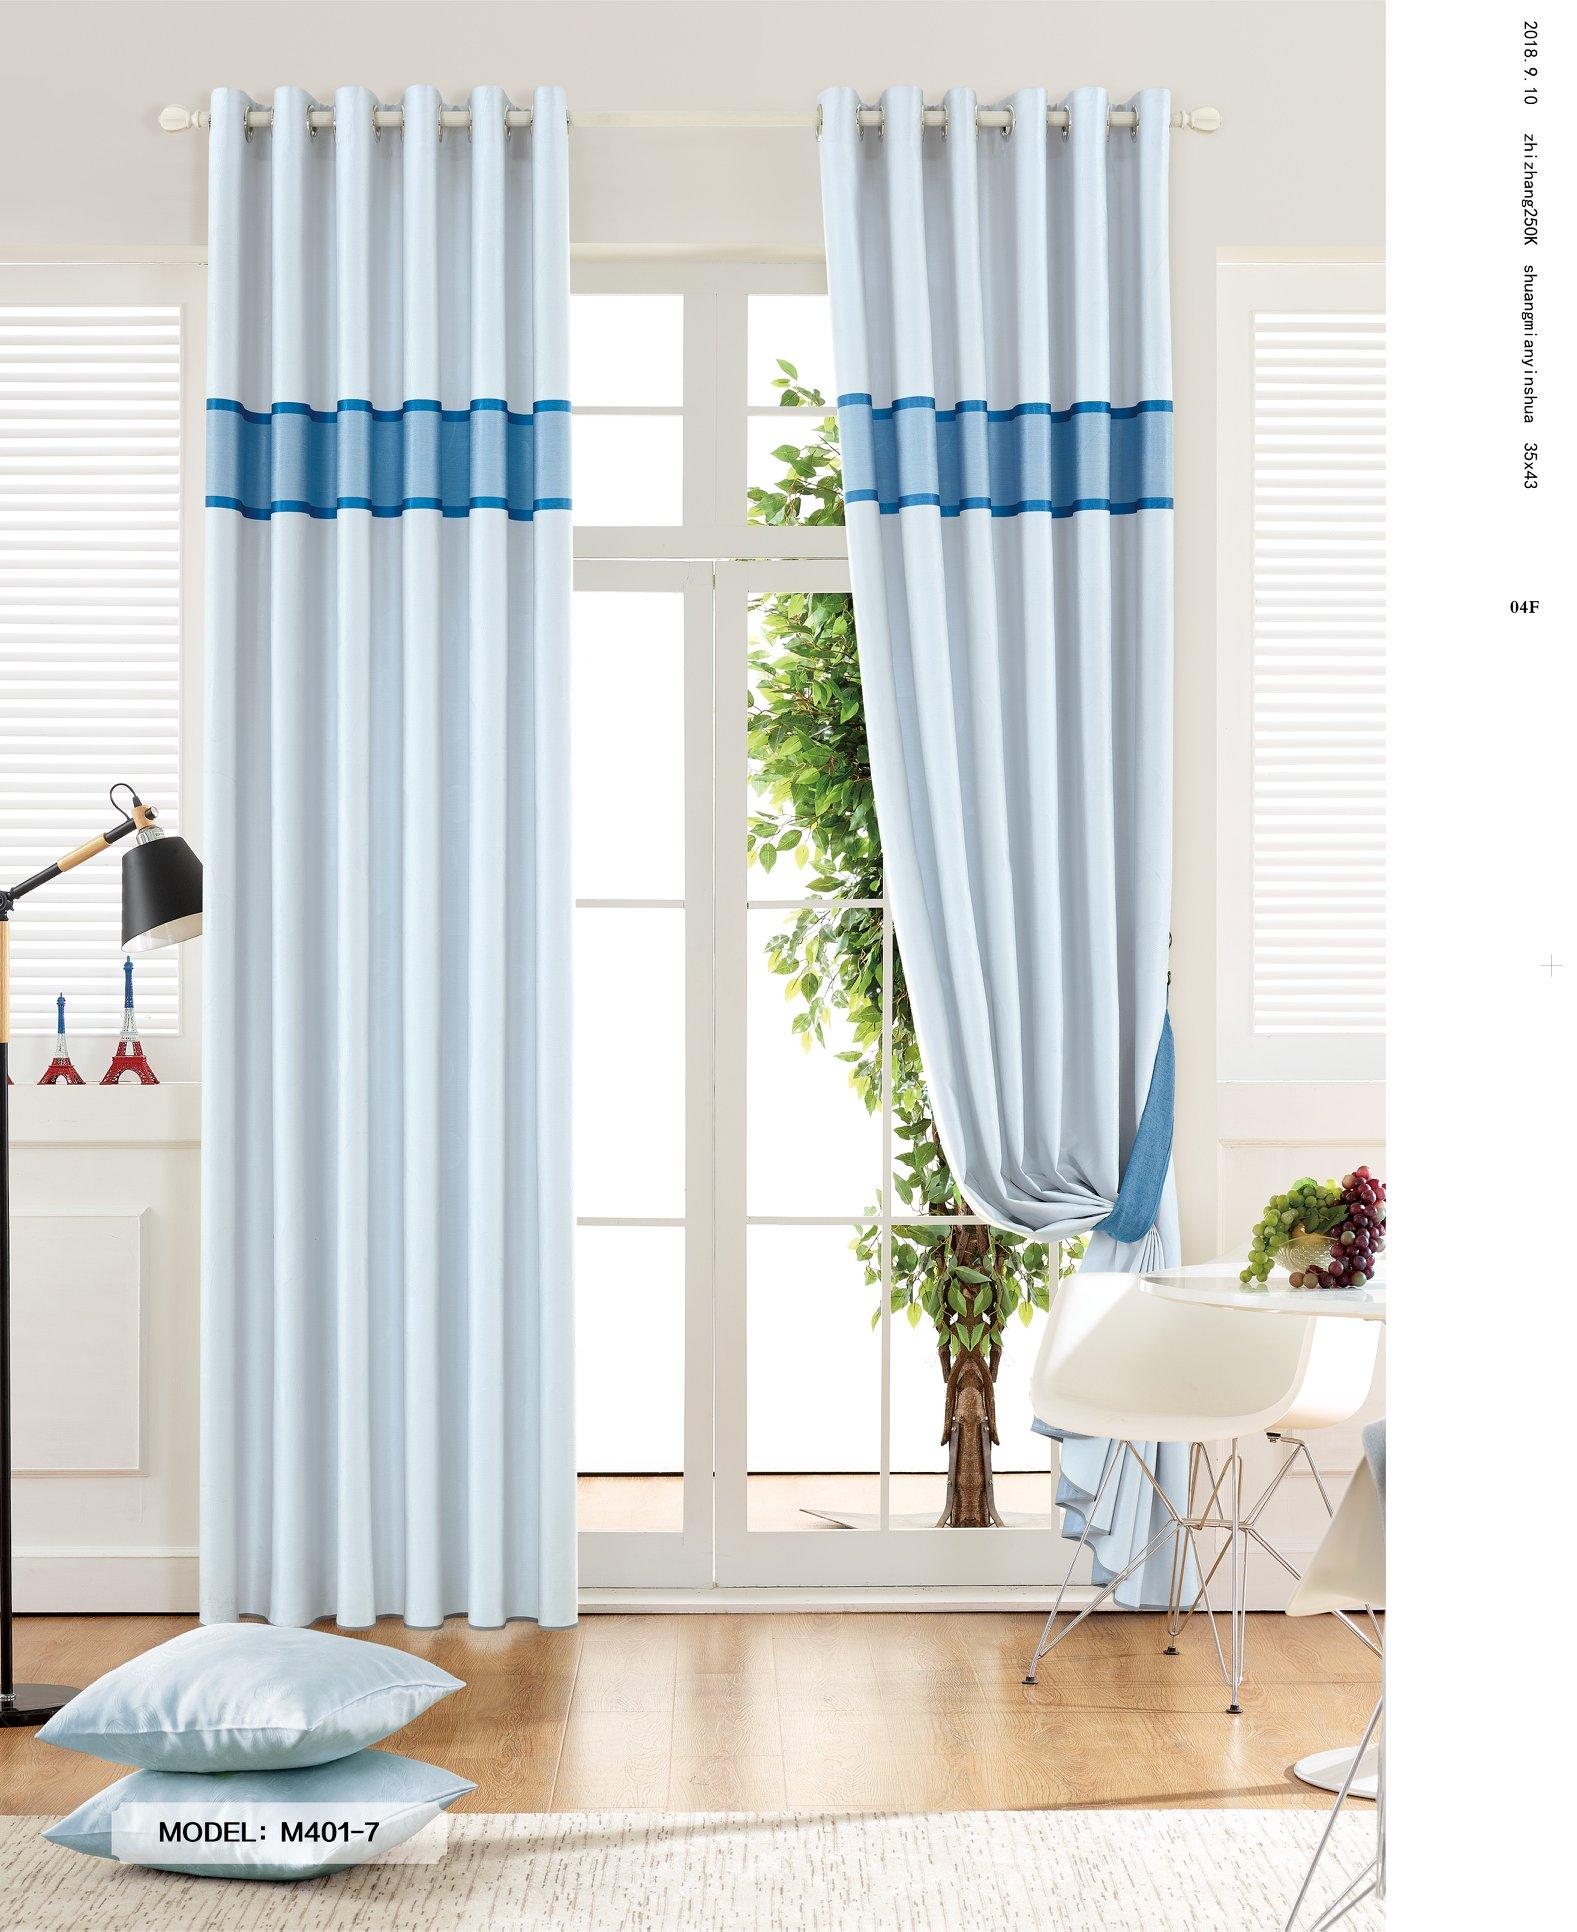 Không gian trong nhà sẽ trở nên tươi mới và tươi mát với sự xuất hiện của rèm cửa màu xanh da trời. Màu sắc tươi sáng này sẽ giúp bạn cảm thấy thư giãn và thoải mái khi ở trong nhà. Hãy khám phá hình ảnh liên quan để tận hưởng cảm giác tuyệt vời này.